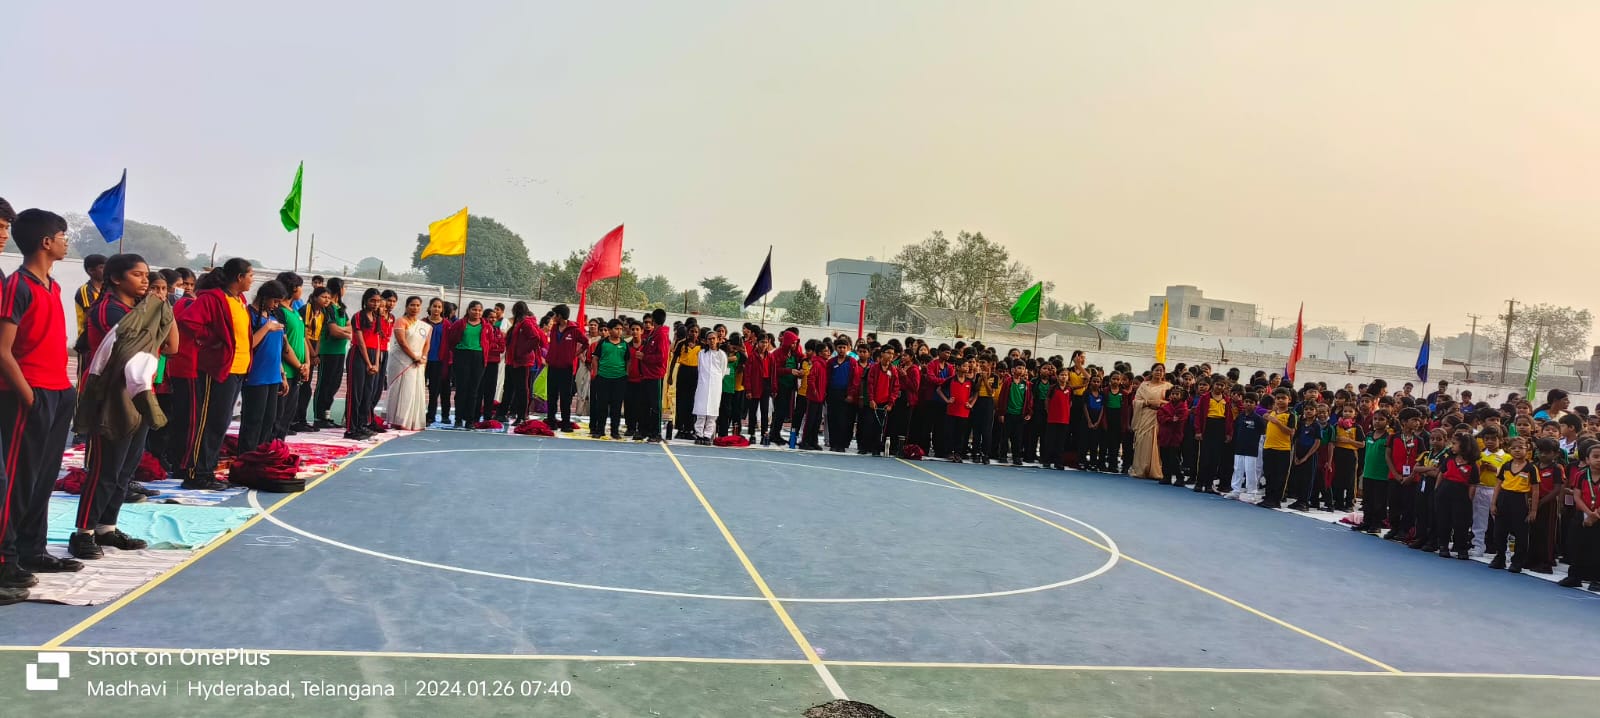 shikhara school bowrampet sports